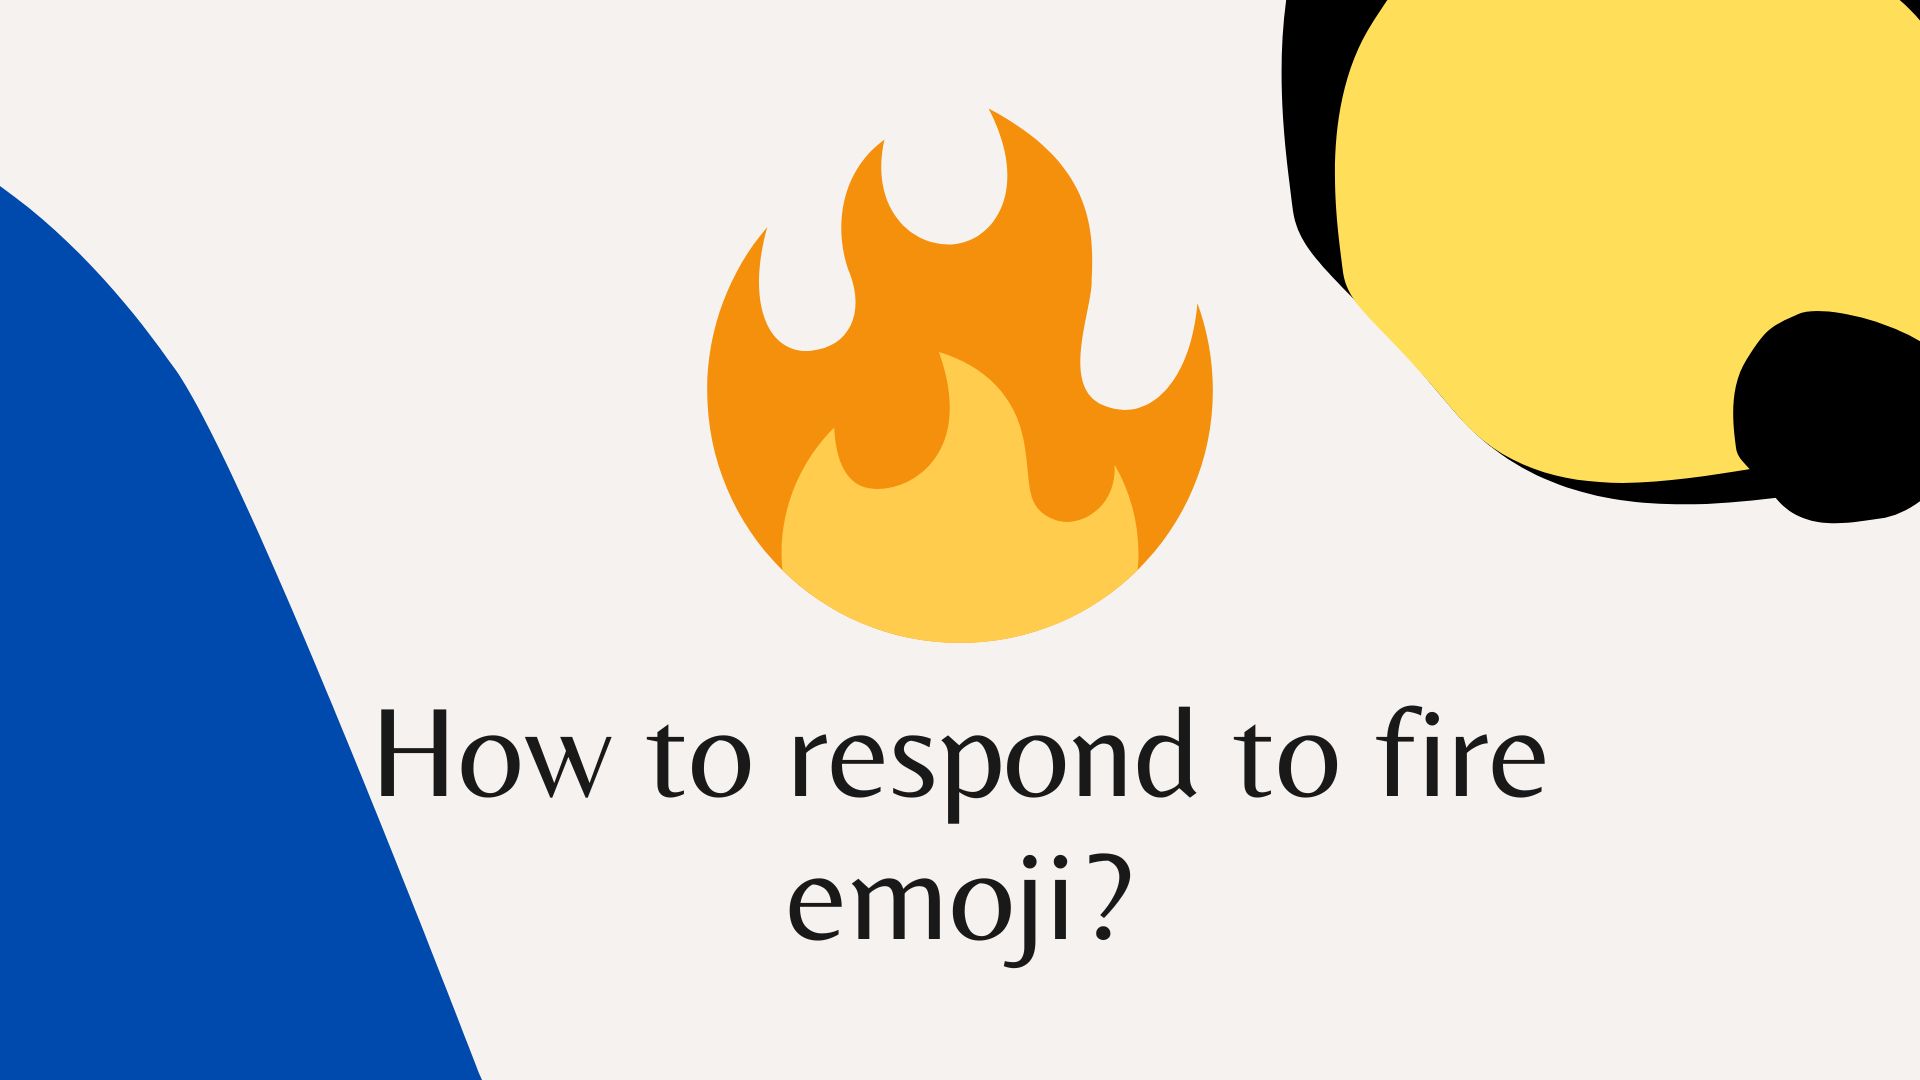 How to respond to fire emoji